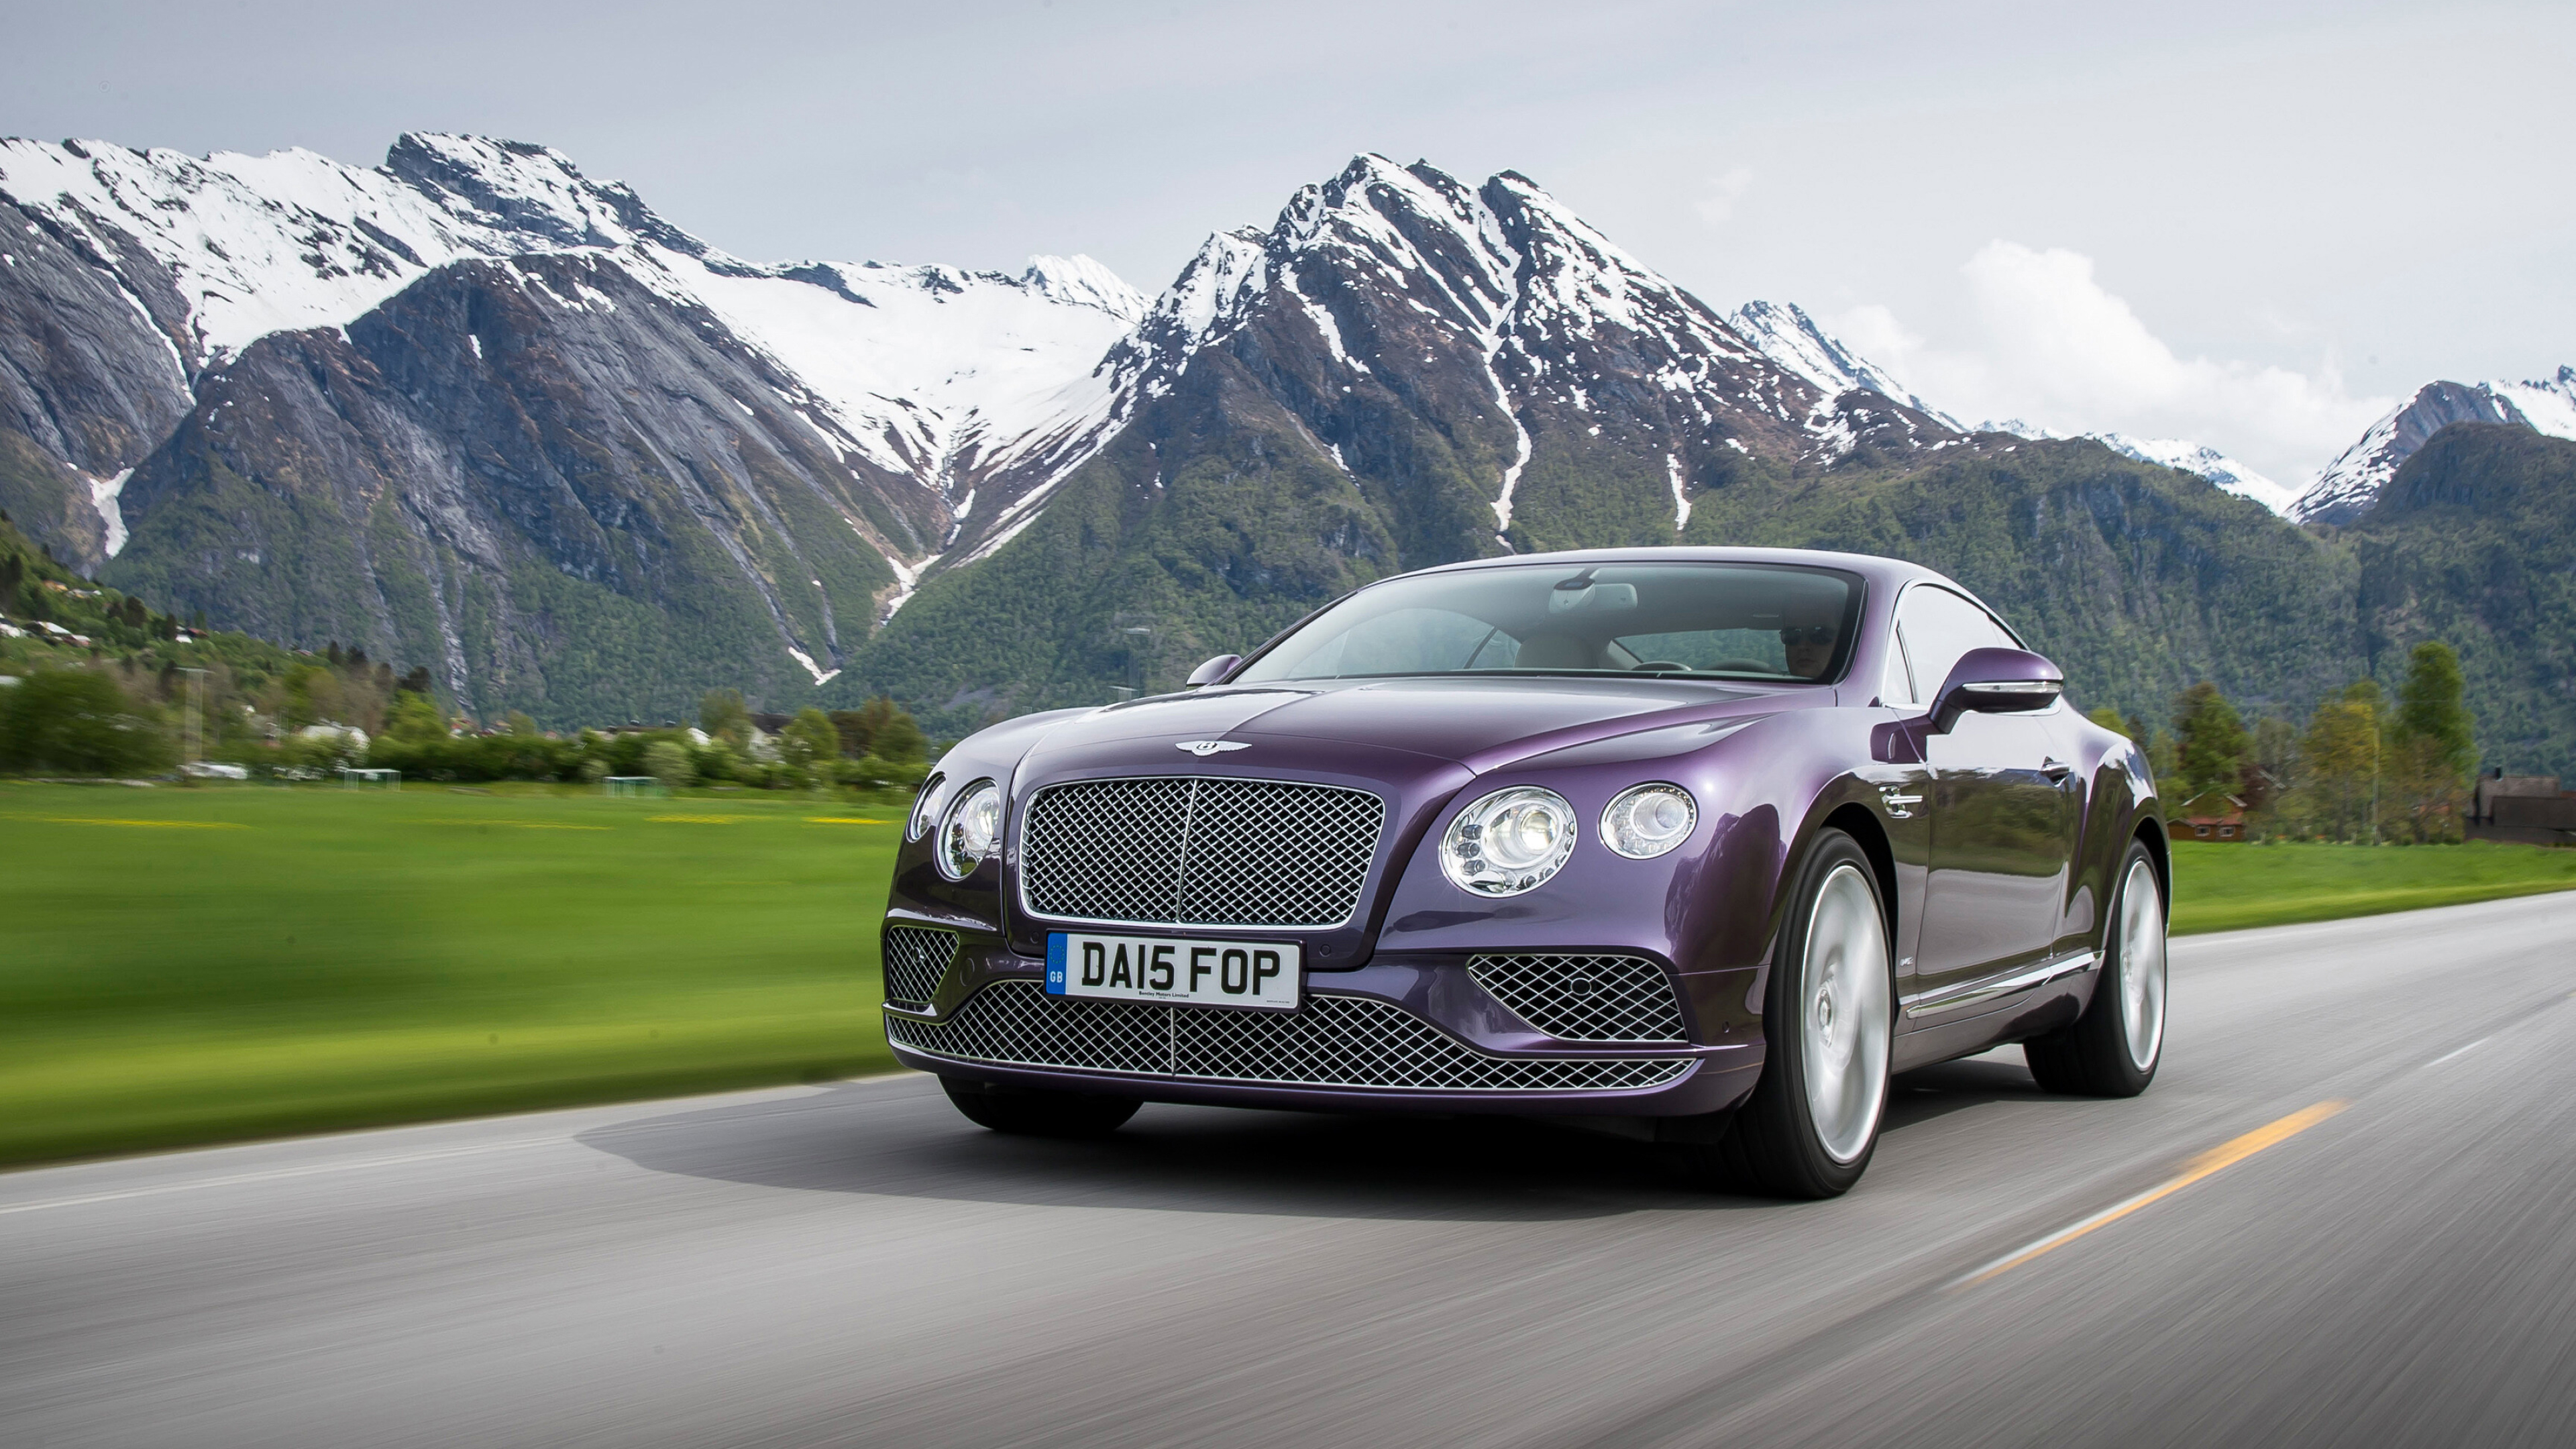 Bentley Continental GT, Cars desktop wallpapers, 4K Ultra HD, Exquisite details, 3840x2160 4K Desktop